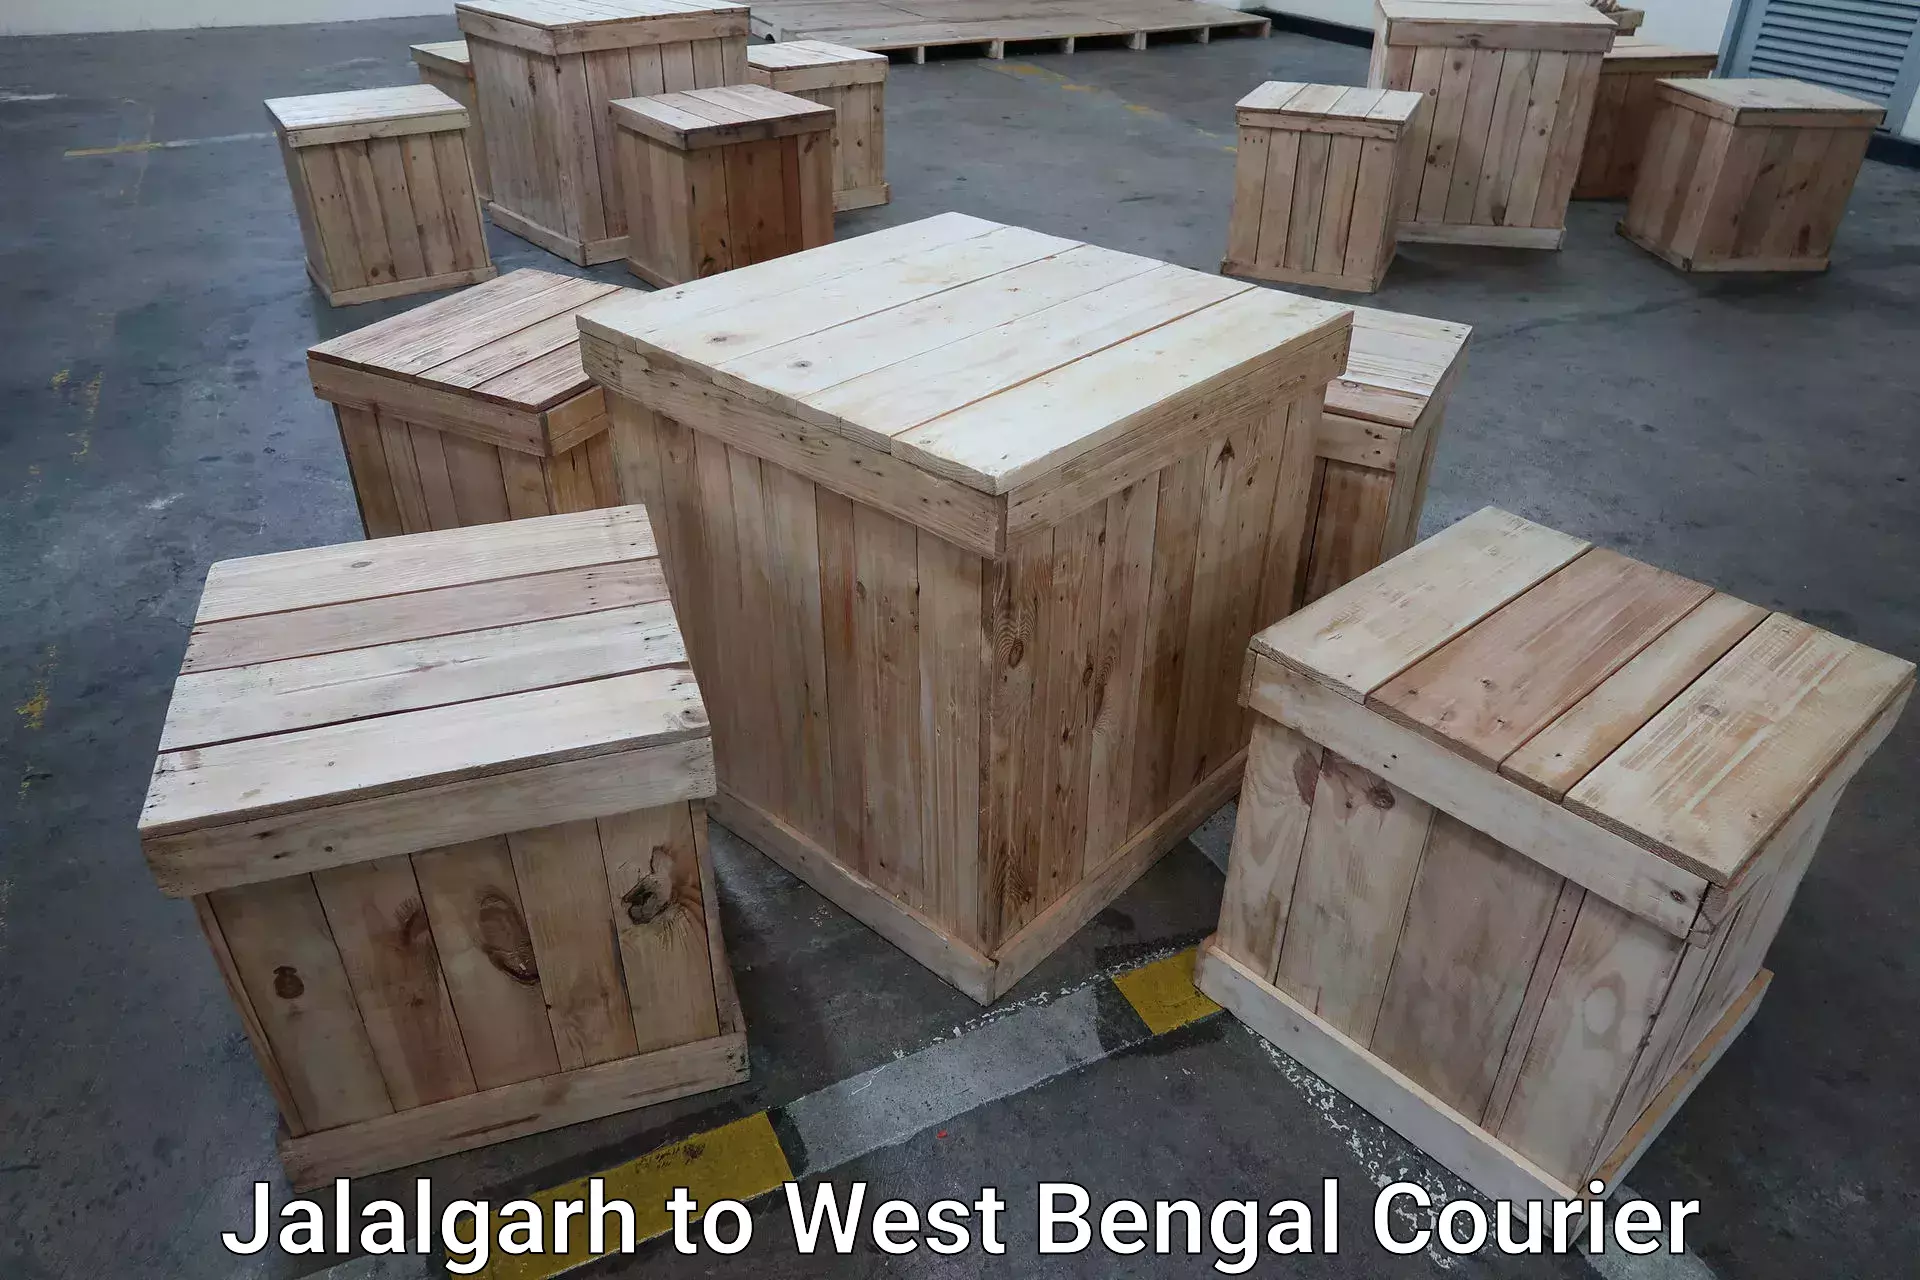 Baggage shipping experts Jalalgarh to Jangipur